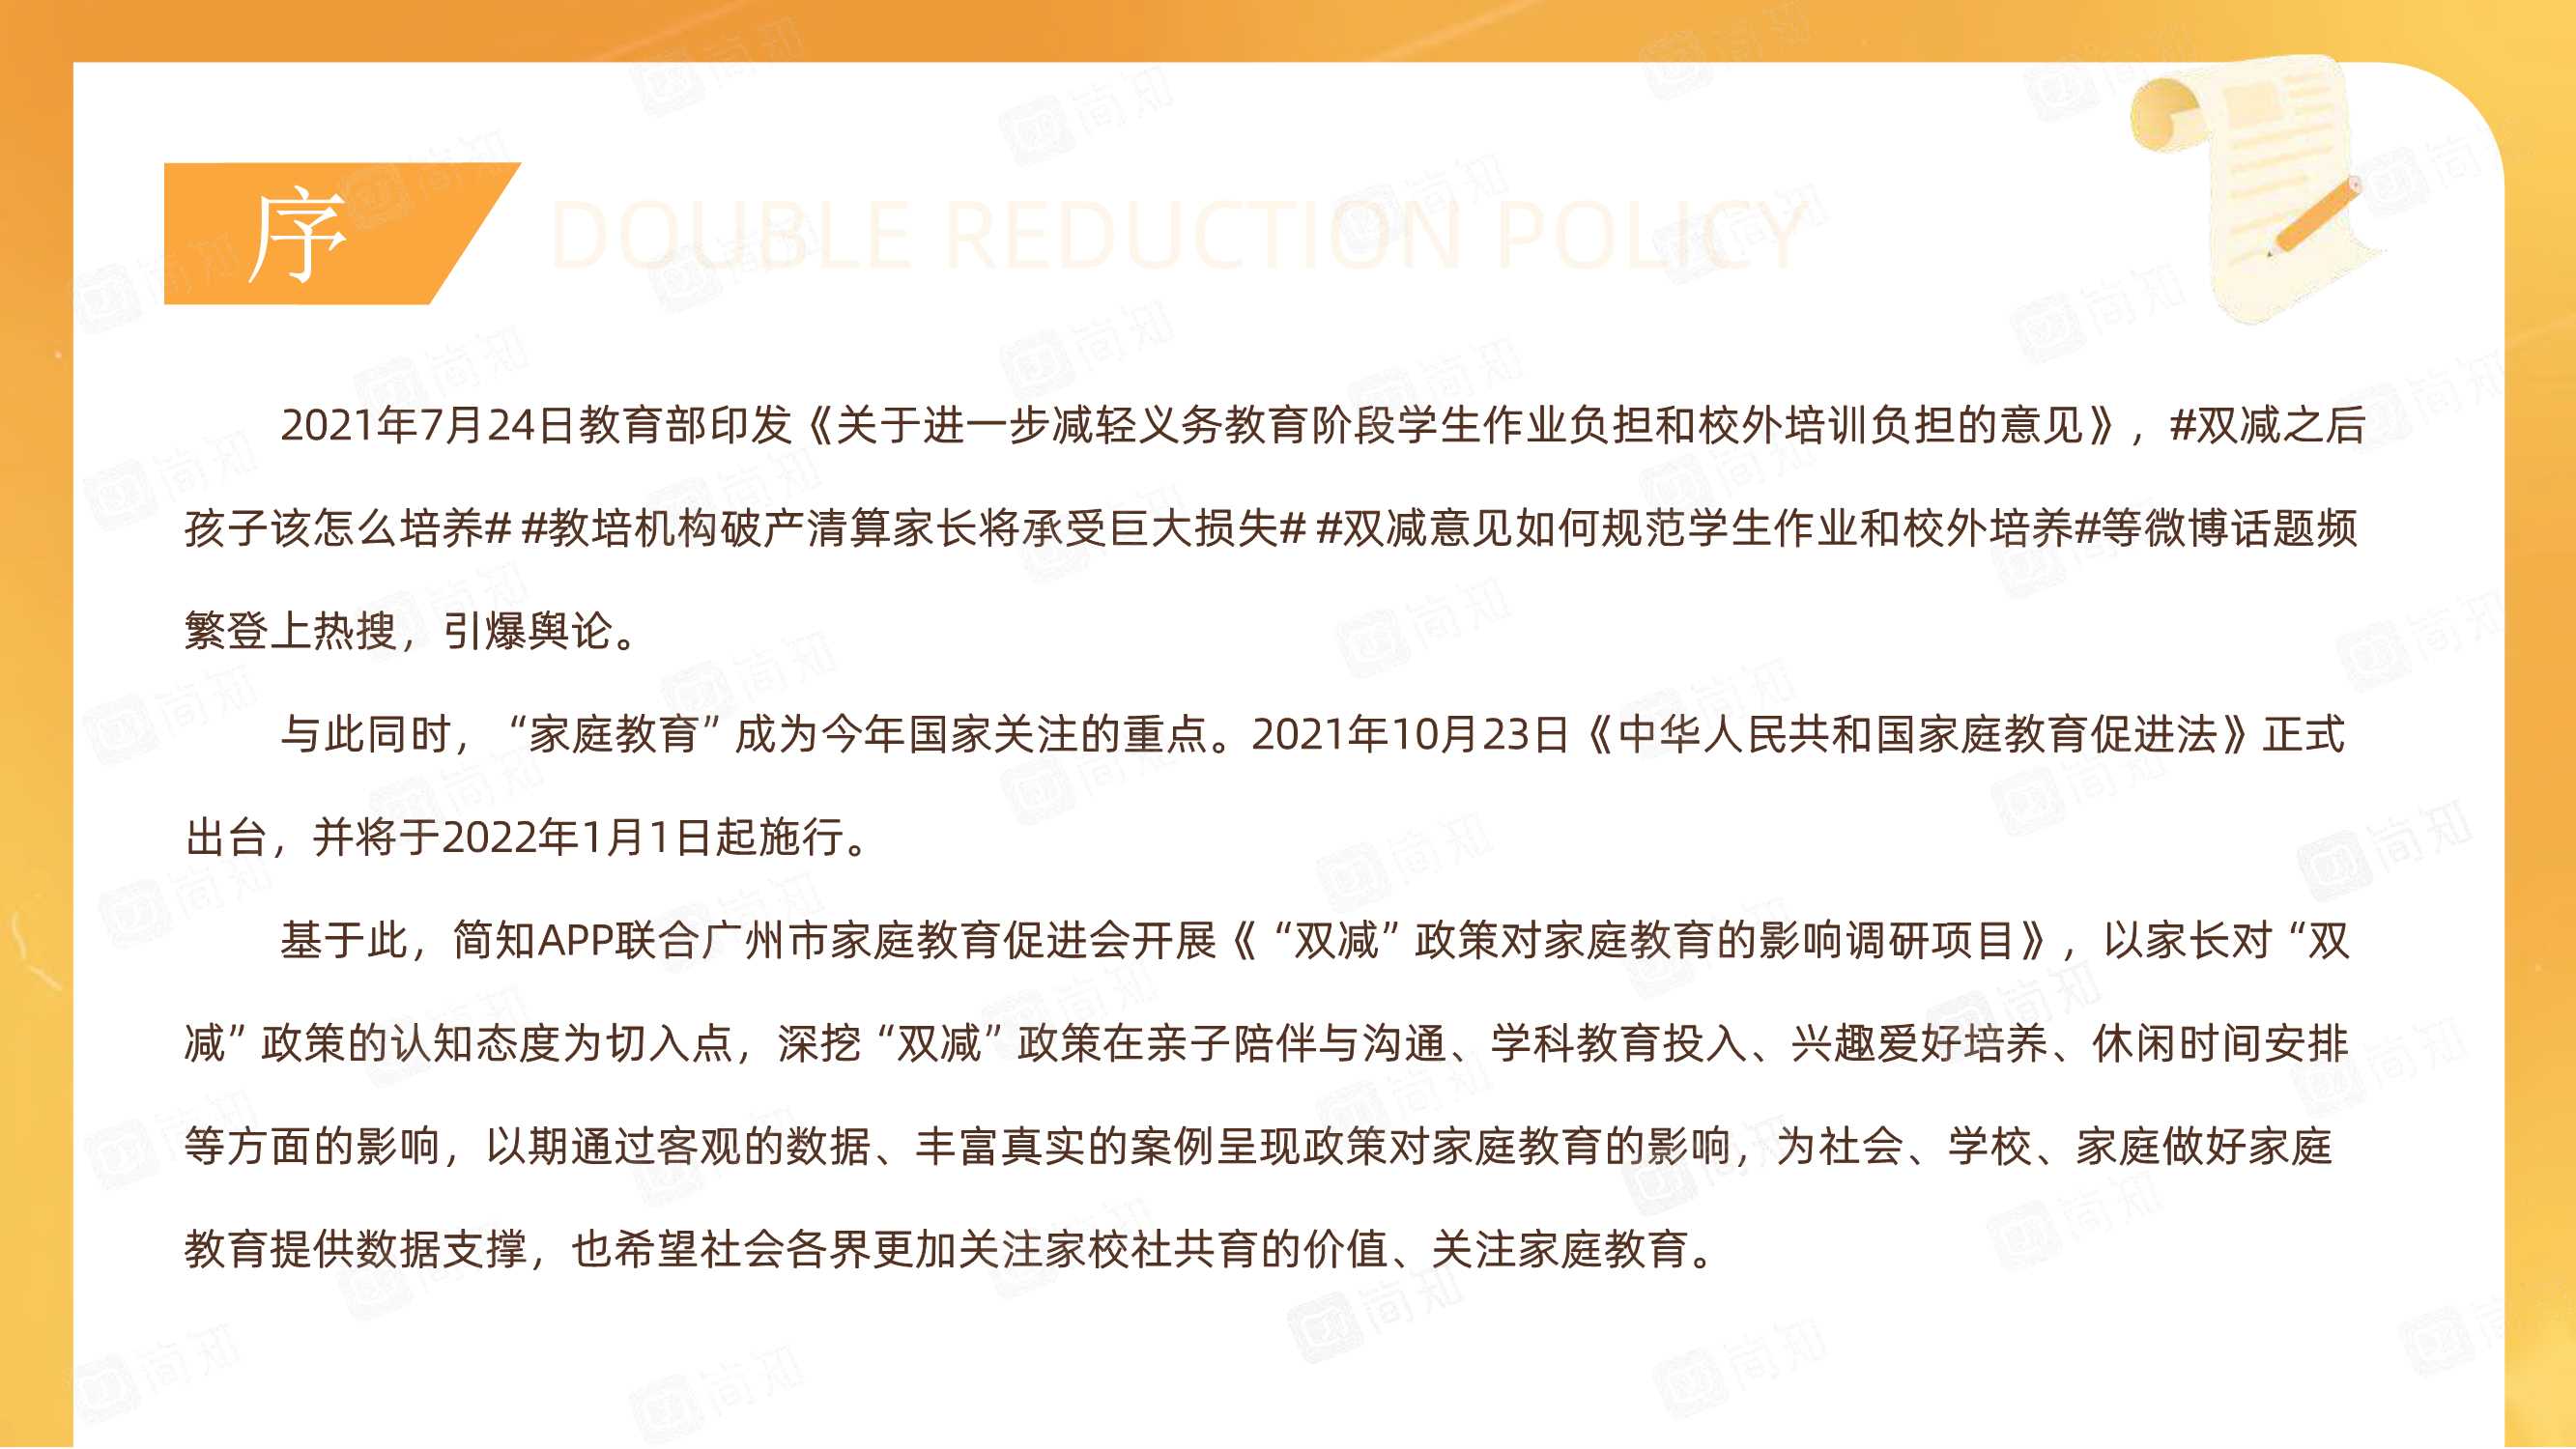 简知&广州市家庭教育促进会-“双减”政策对家庭教育的影响调研报告-2021.11-61页